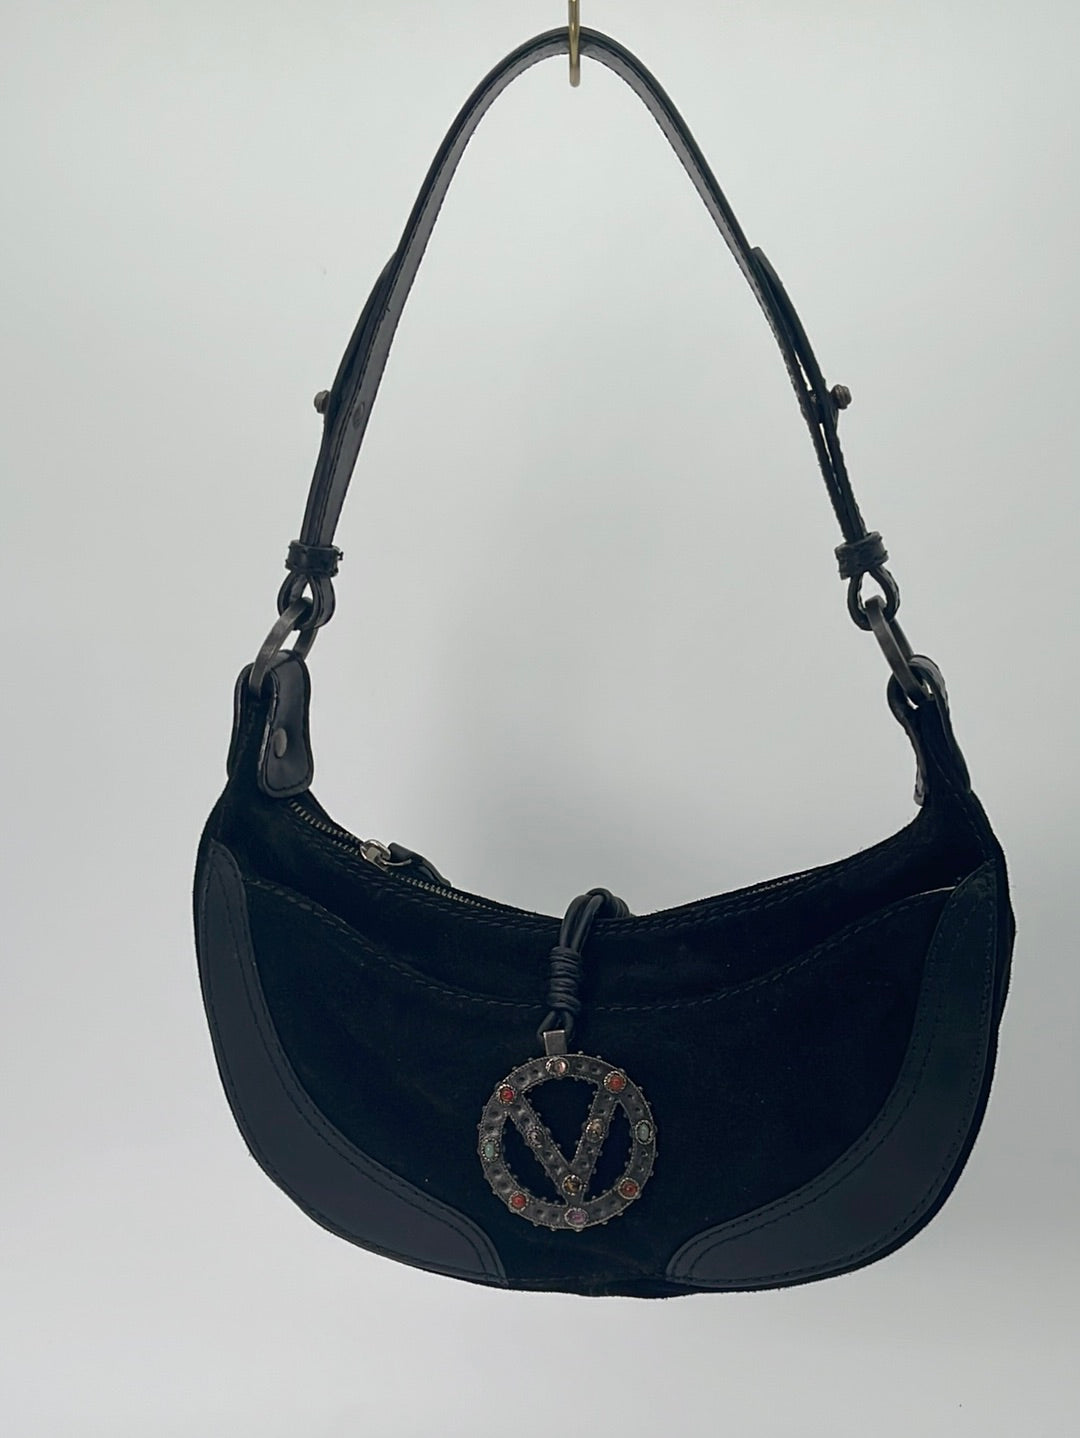 Preloved Chanel Beige Matelasse Leather Chain Shoulder Bag 1257772 041823